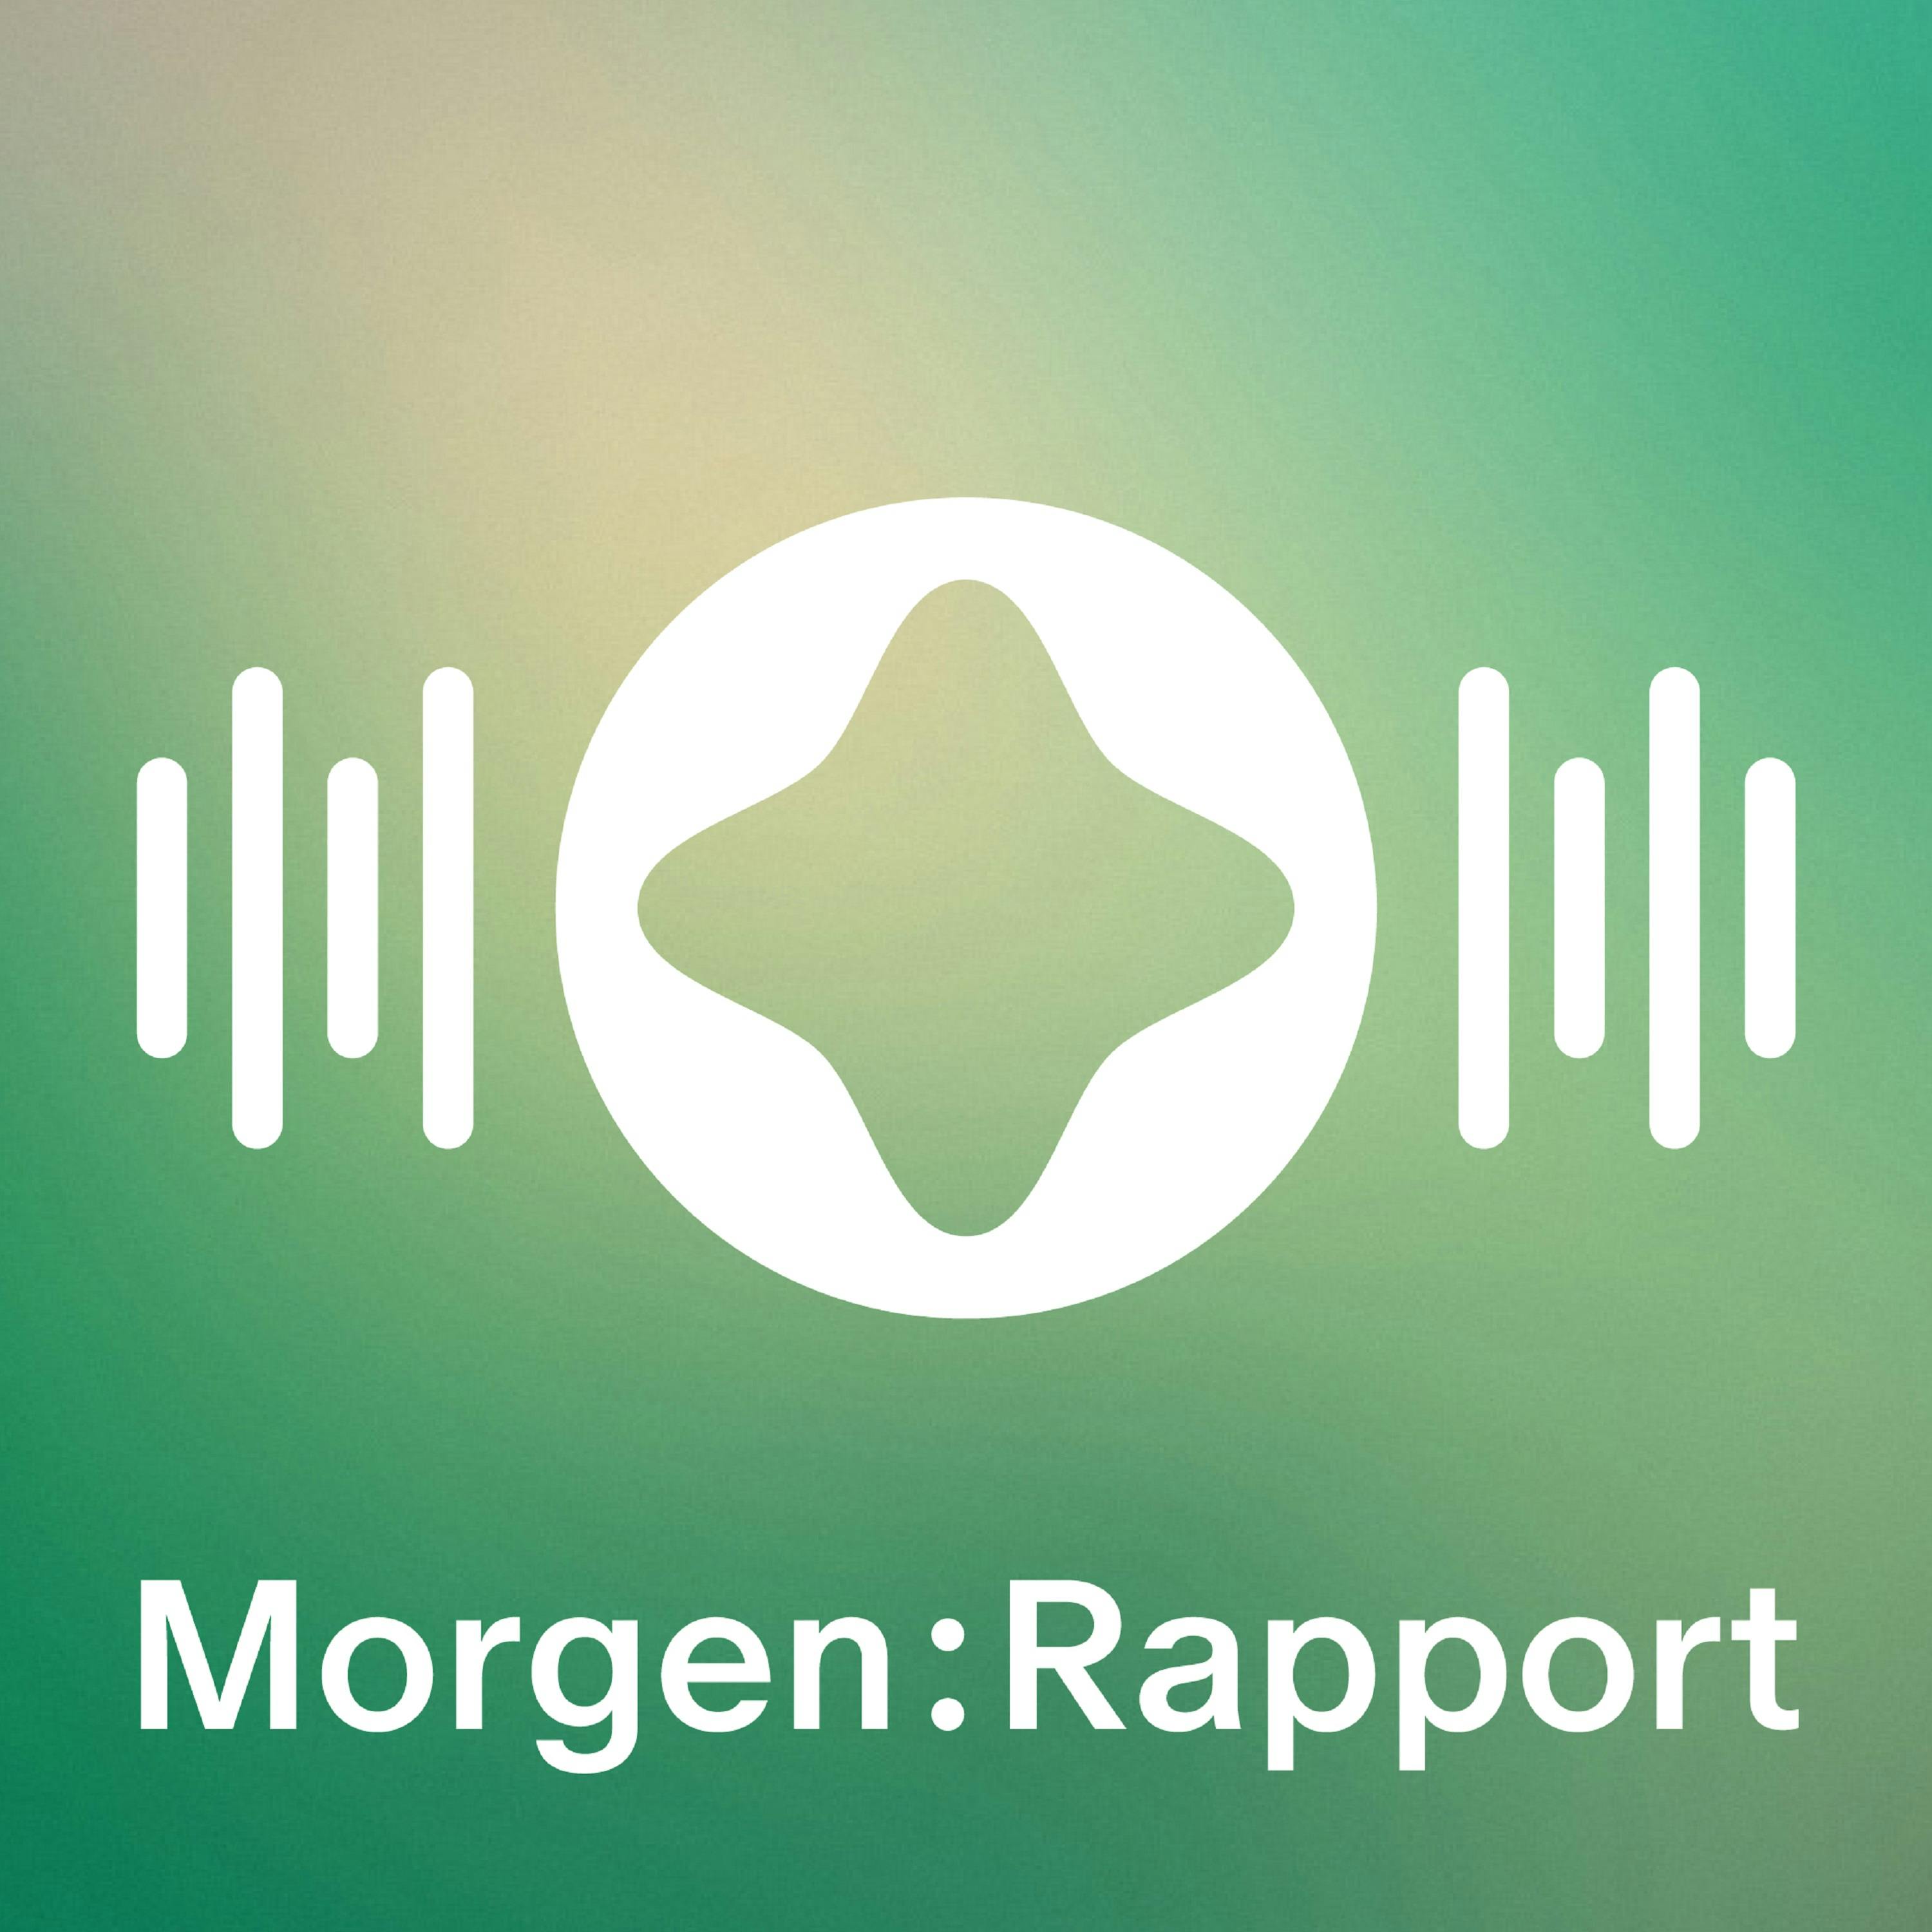 Podcast-Logo für "Morgen:Rapport" mit abstraktem Symbol und Wellenformen auf grünem Verlaufshintergrund.